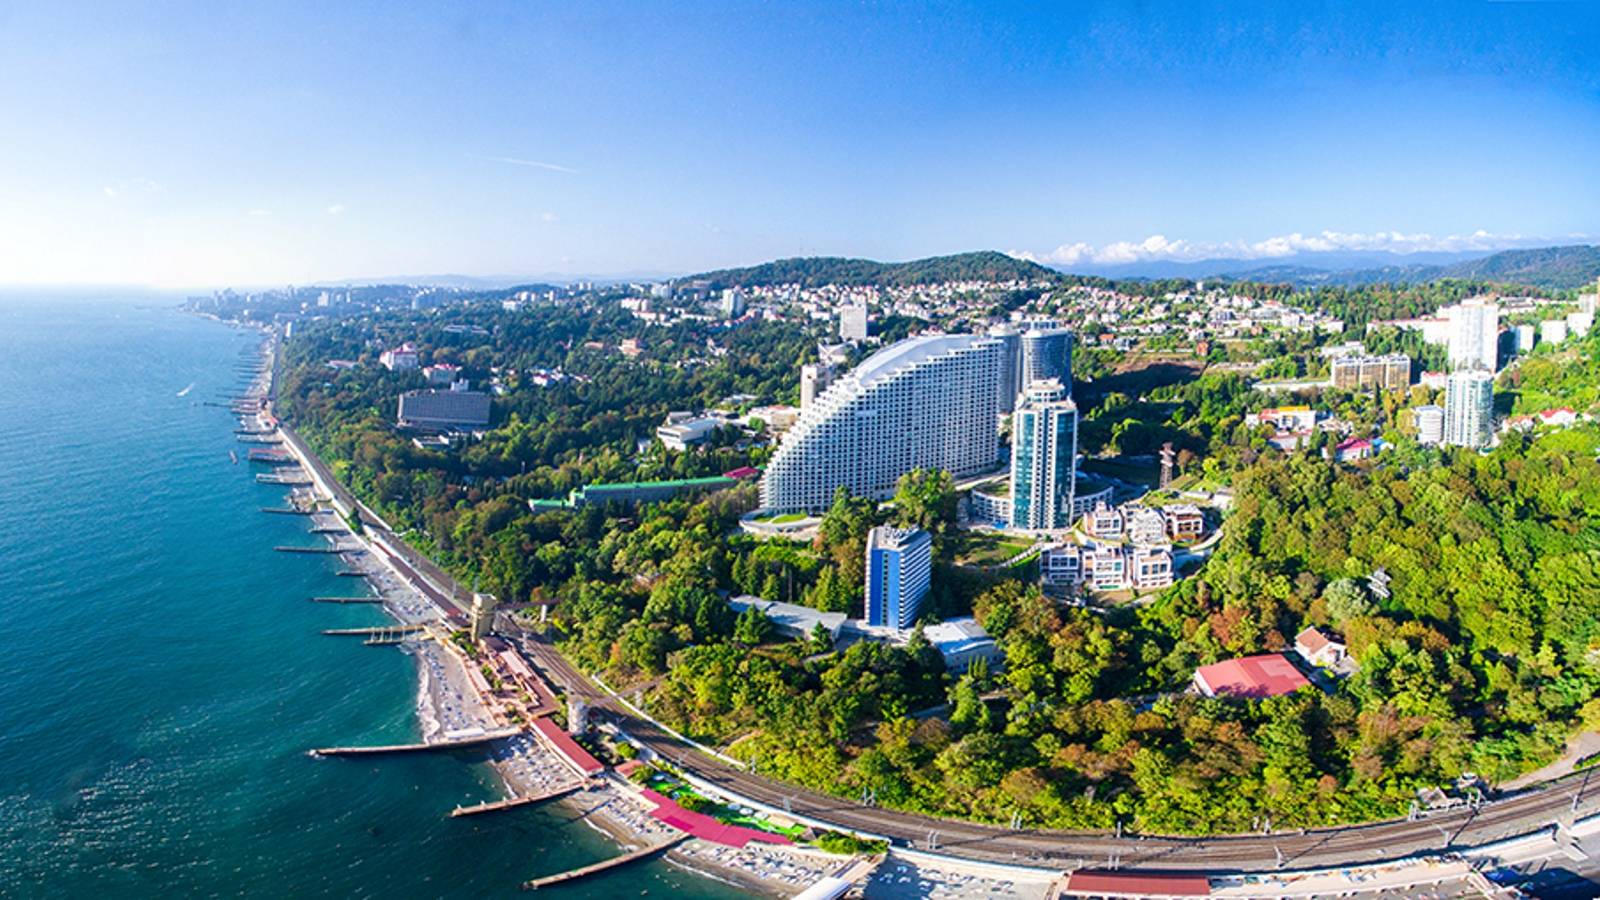 16 лучших курортов россии на черном море